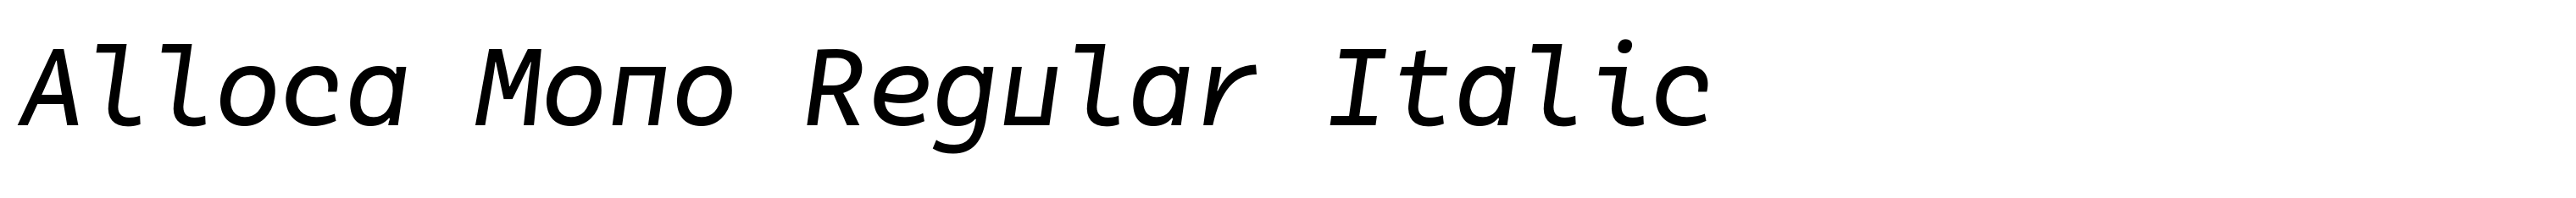 Alloca Mono Regular Italic